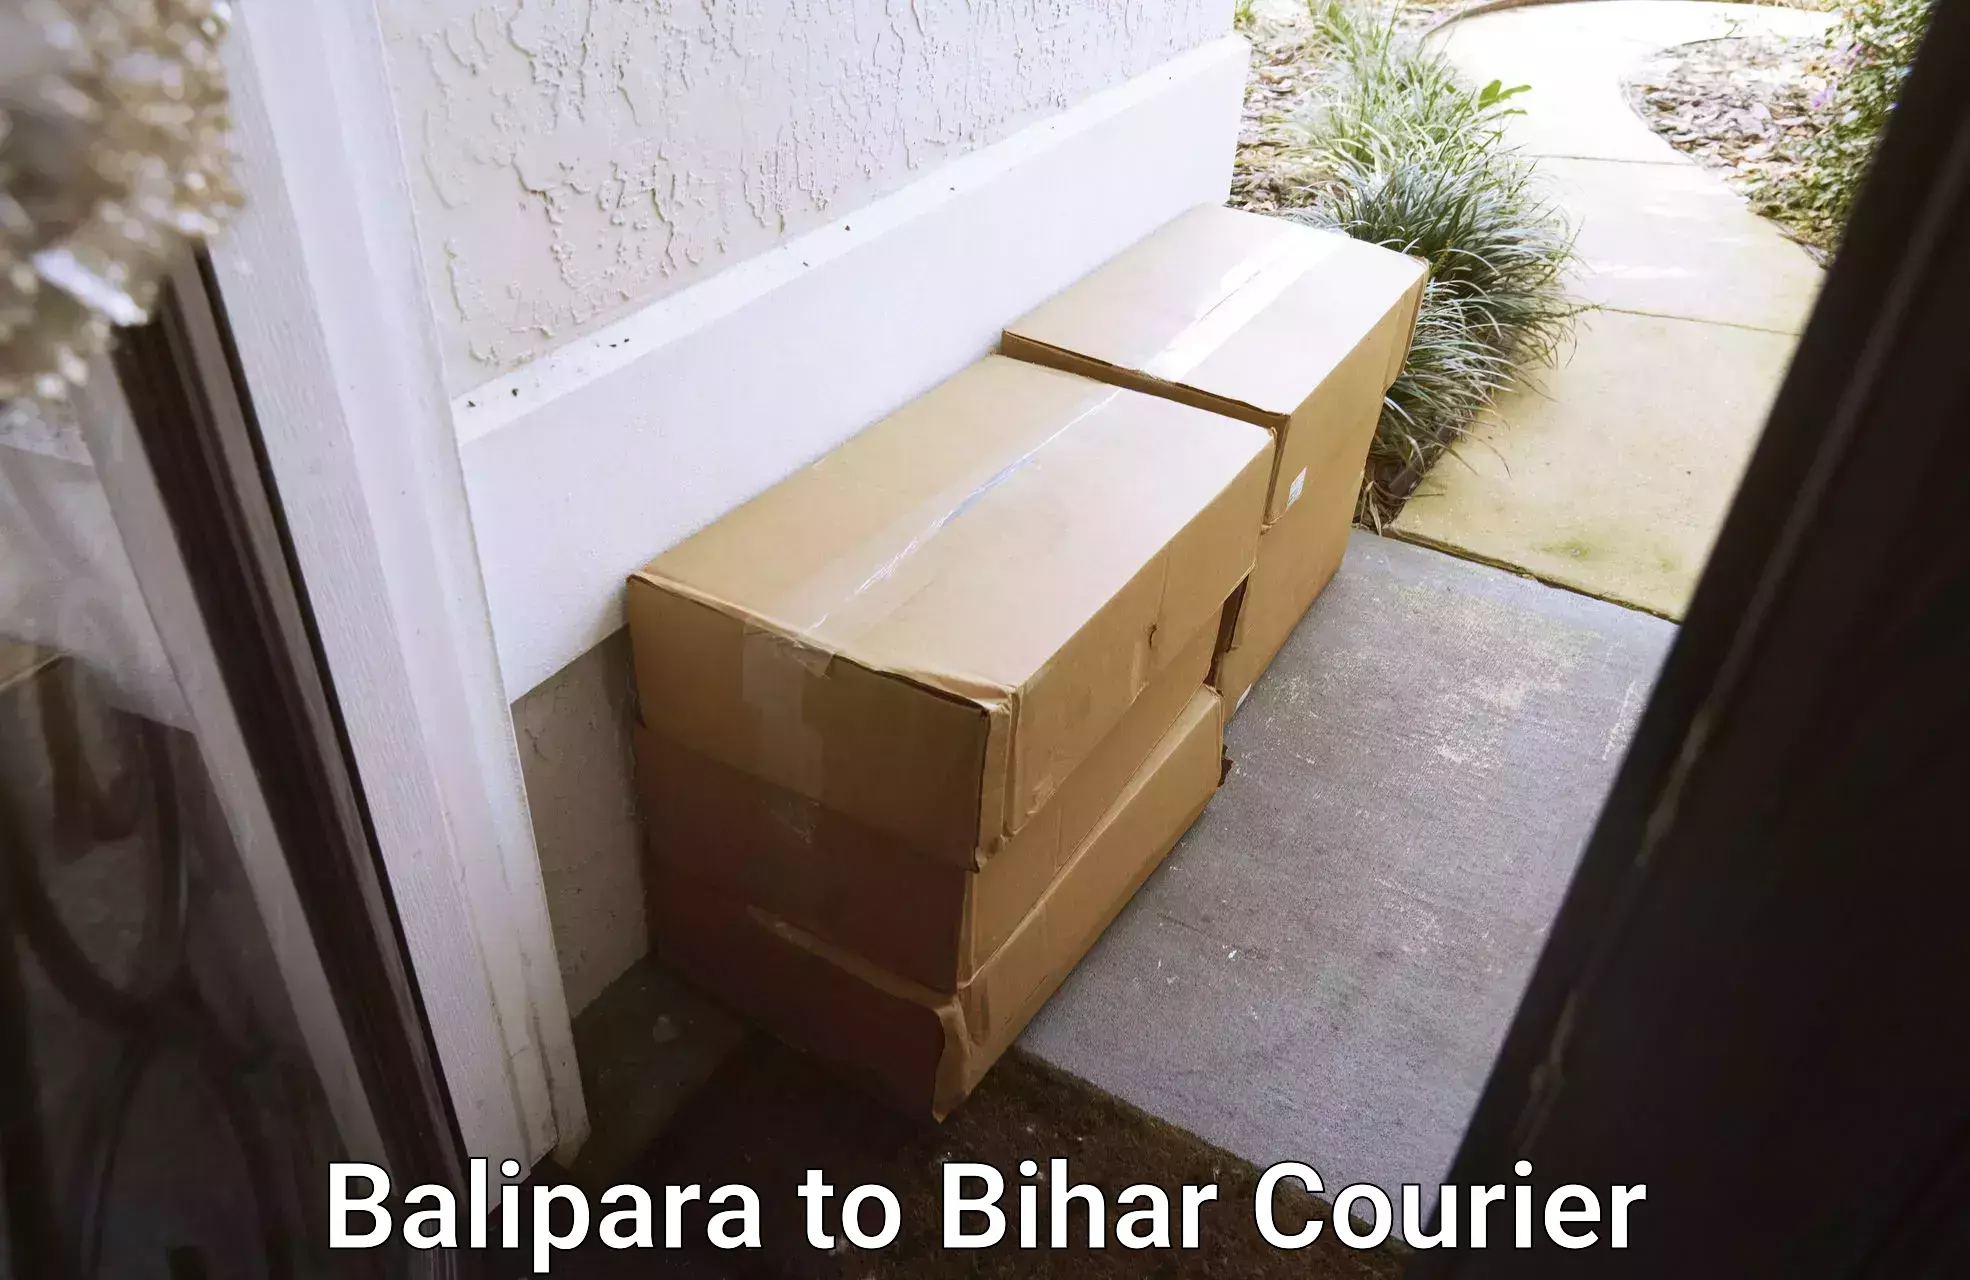 Nationwide courier service Balipara to Narkatiaganj